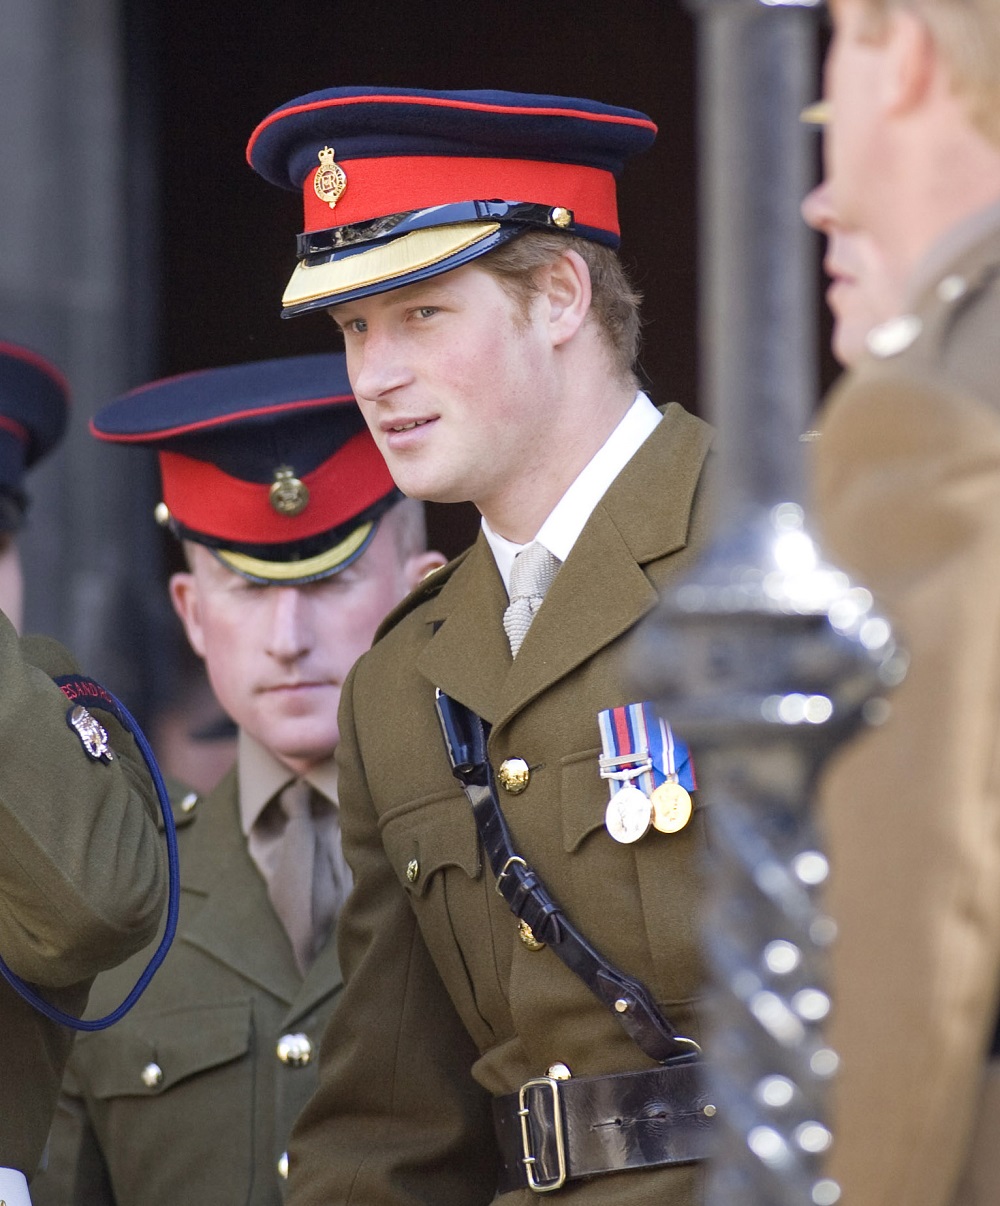 アフガニスタンで戦死した兵士を追悼するパレードに参加したヘンリー王子（2008年6月、スコットランドのセント・ジャイルズ大聖堂にて撮影）